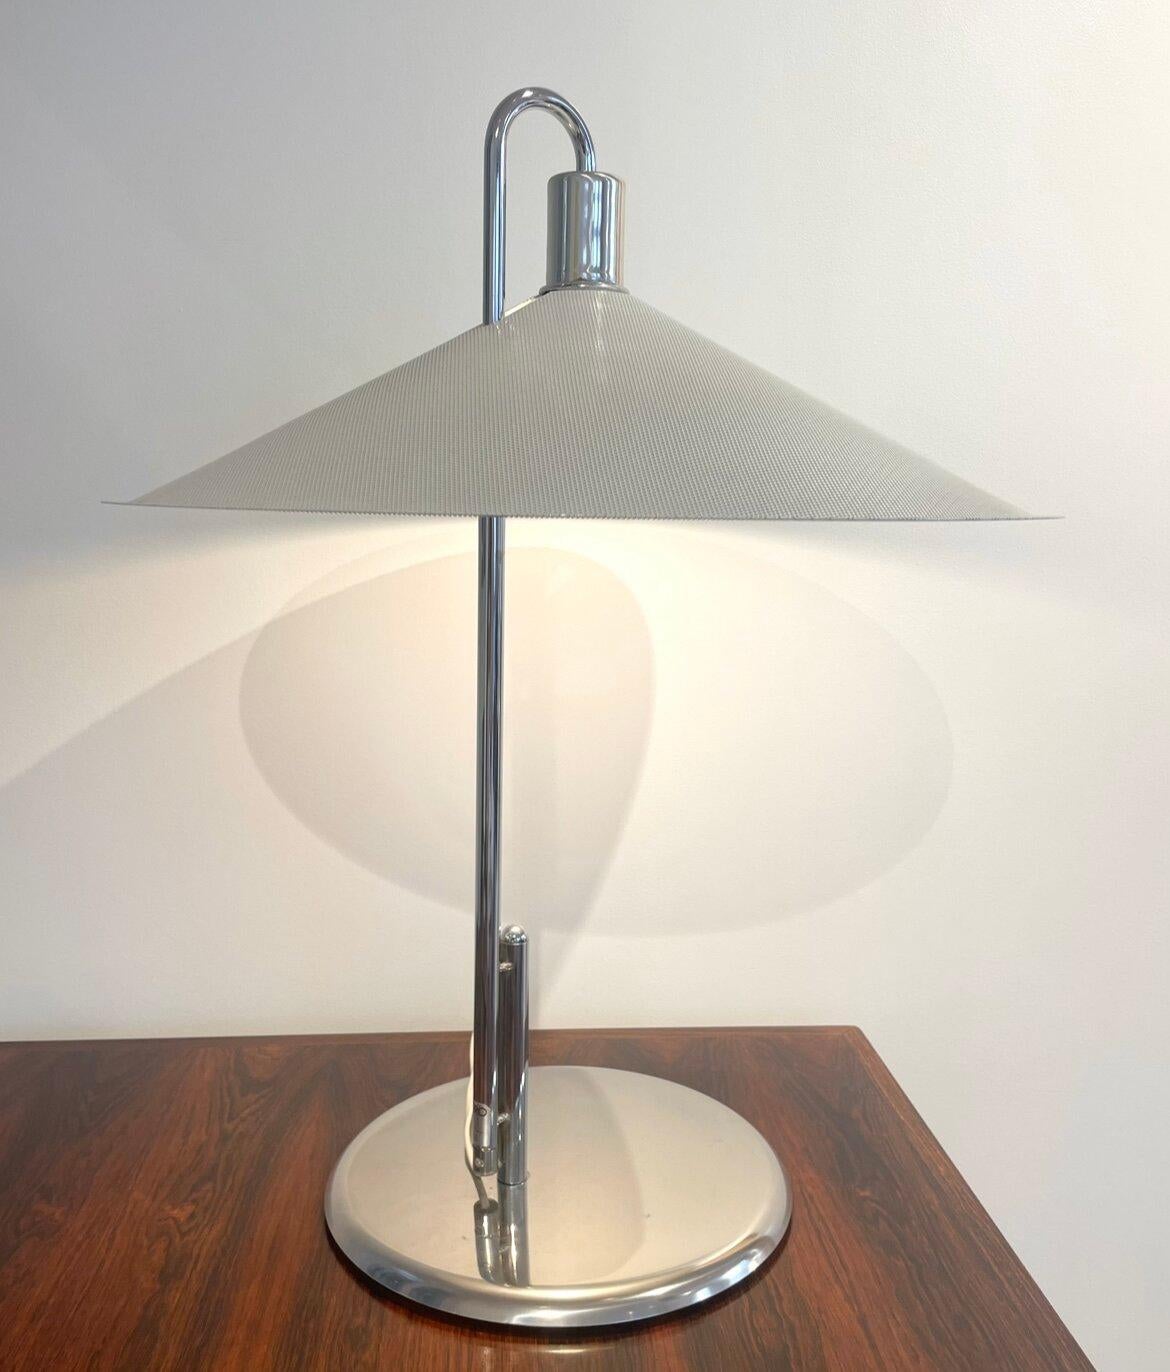 Créée par les designers suédois Lindau et Lindekrantz pour l'éditeur Zero dans les années 70, cette lampe à poser présente une ligne très graphique renforcée par son large abat-jour en métal laqué et perforé.